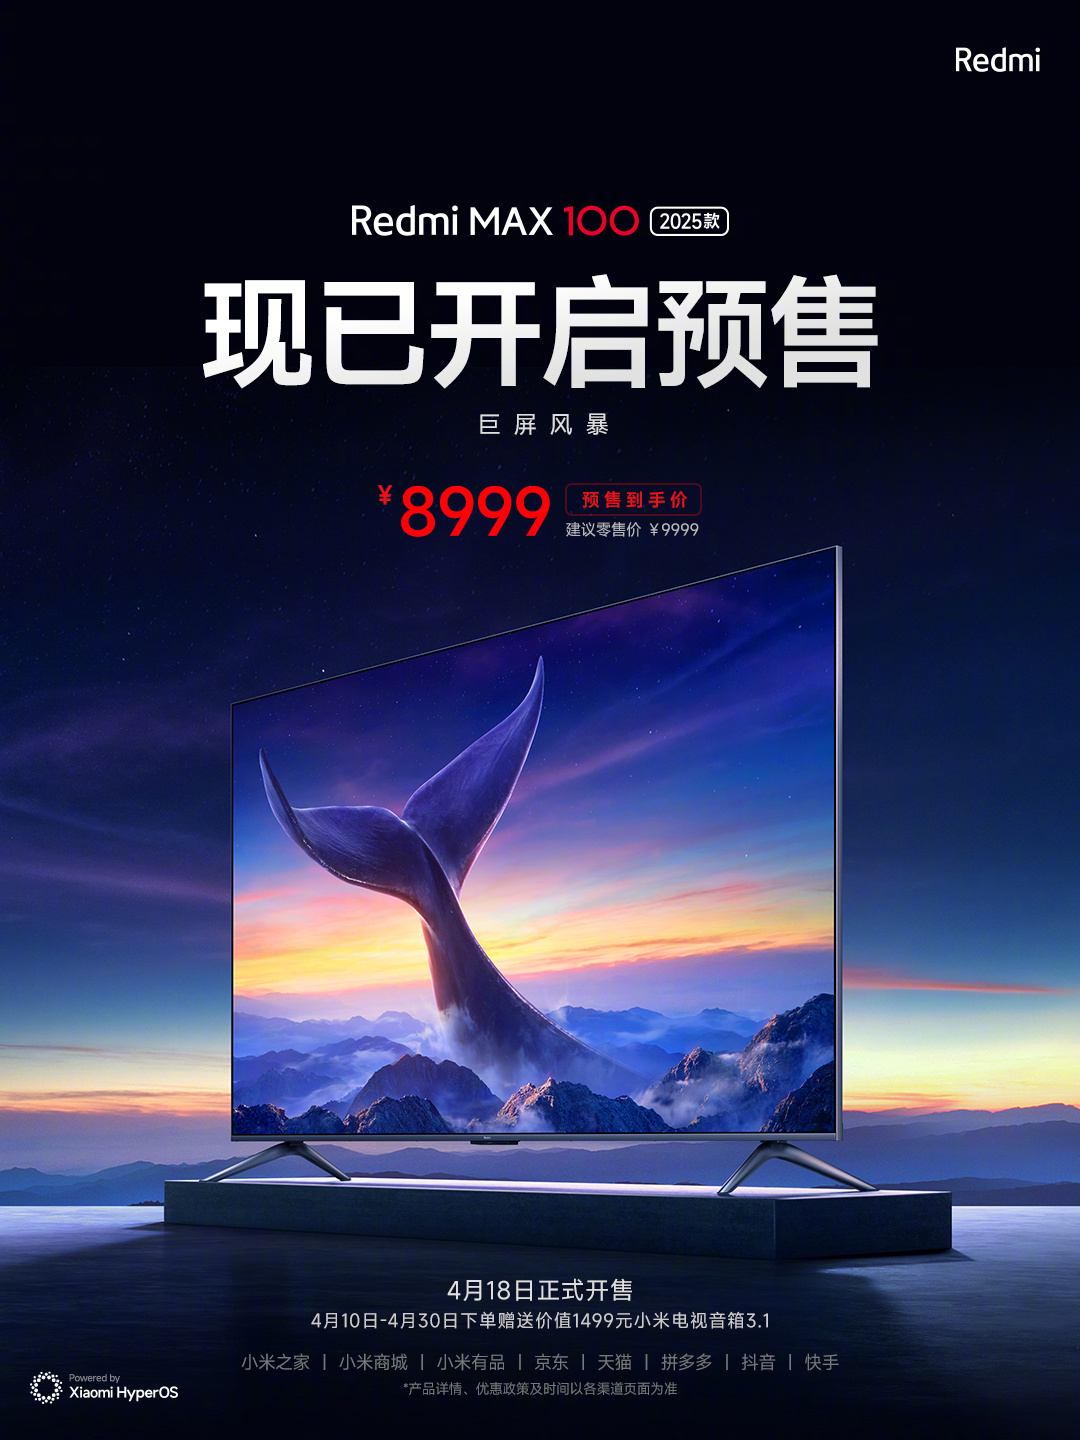 телевизор Redmi MAX 100 2025